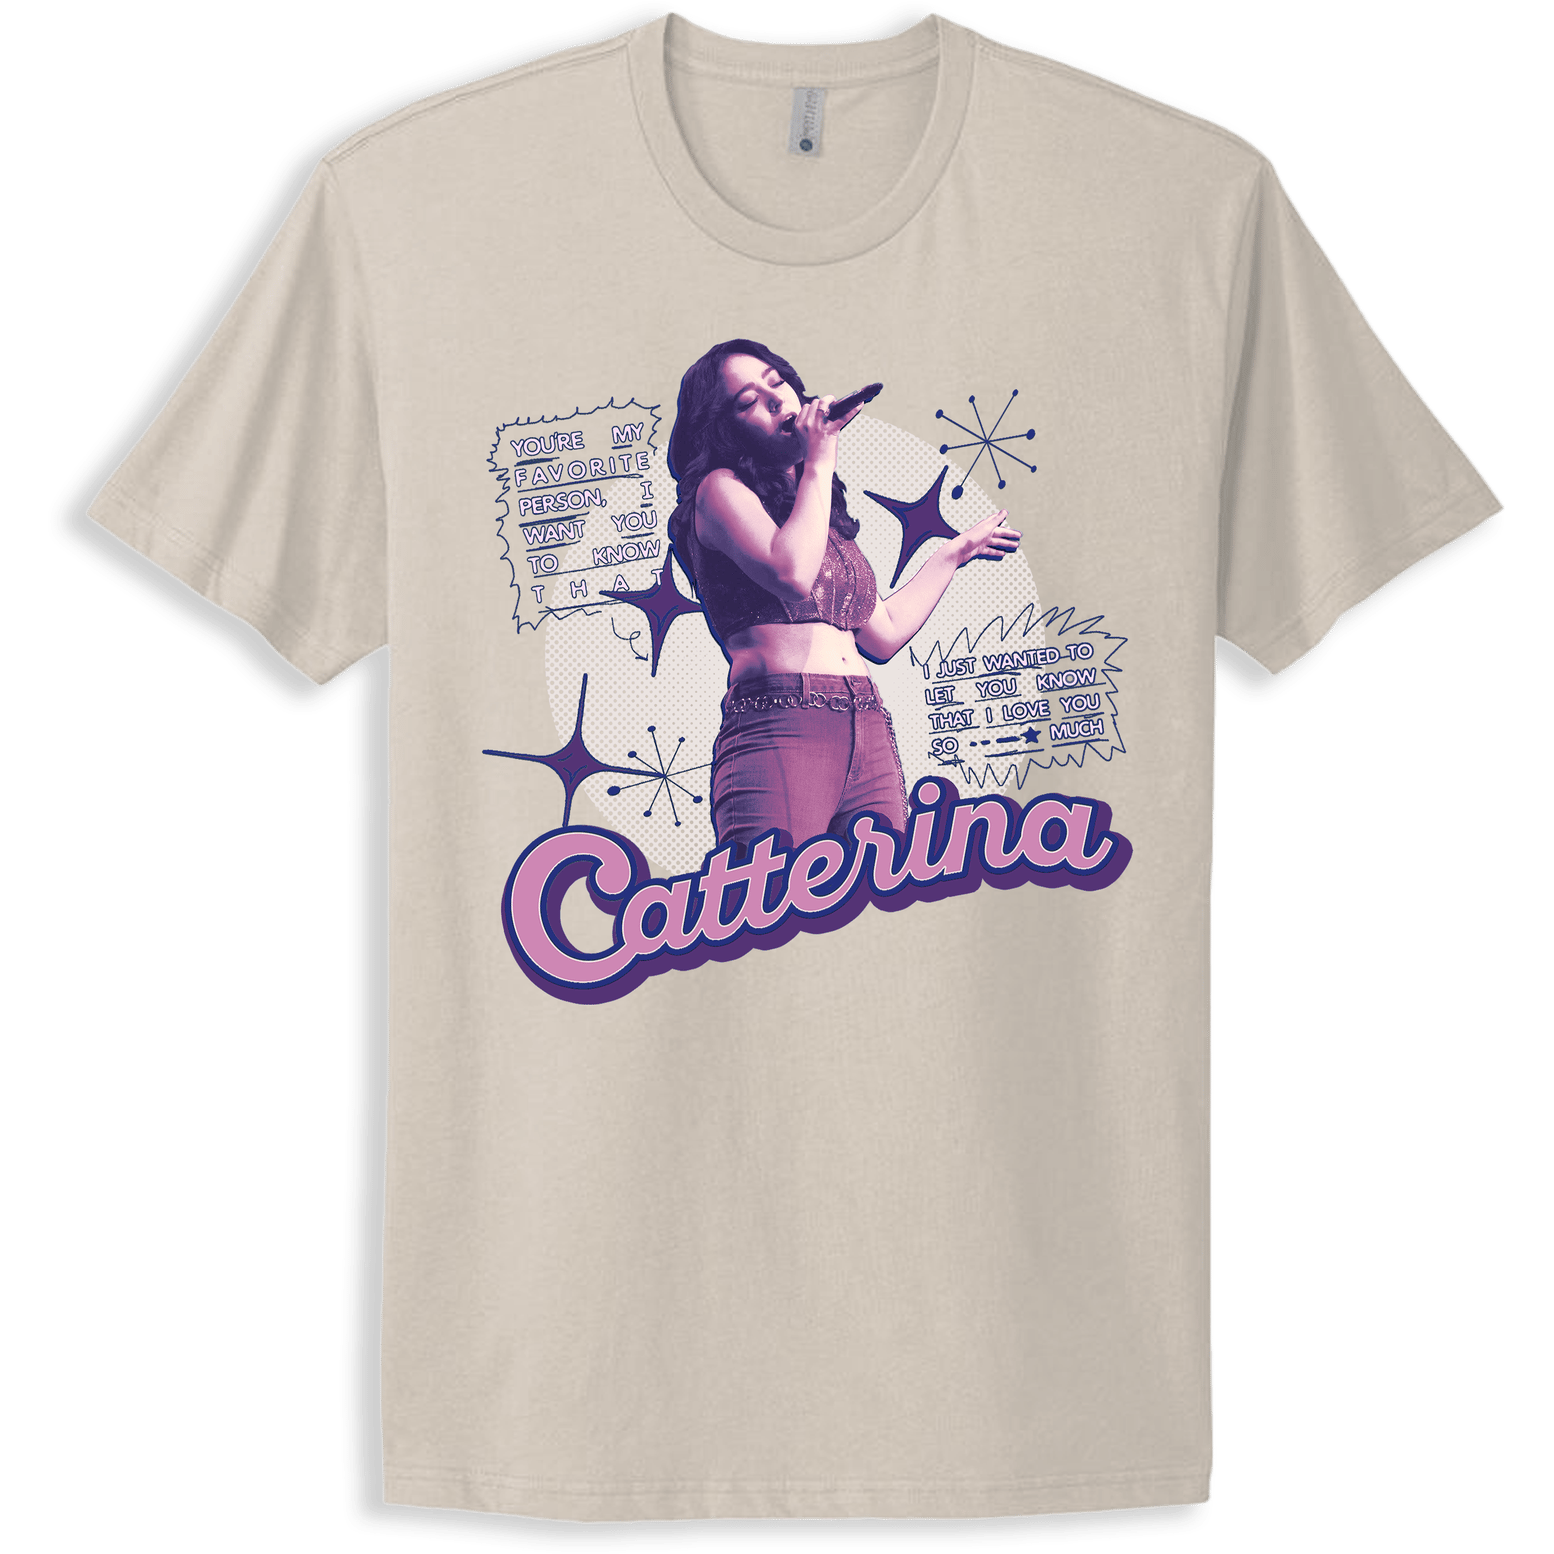 Catterina Shirt